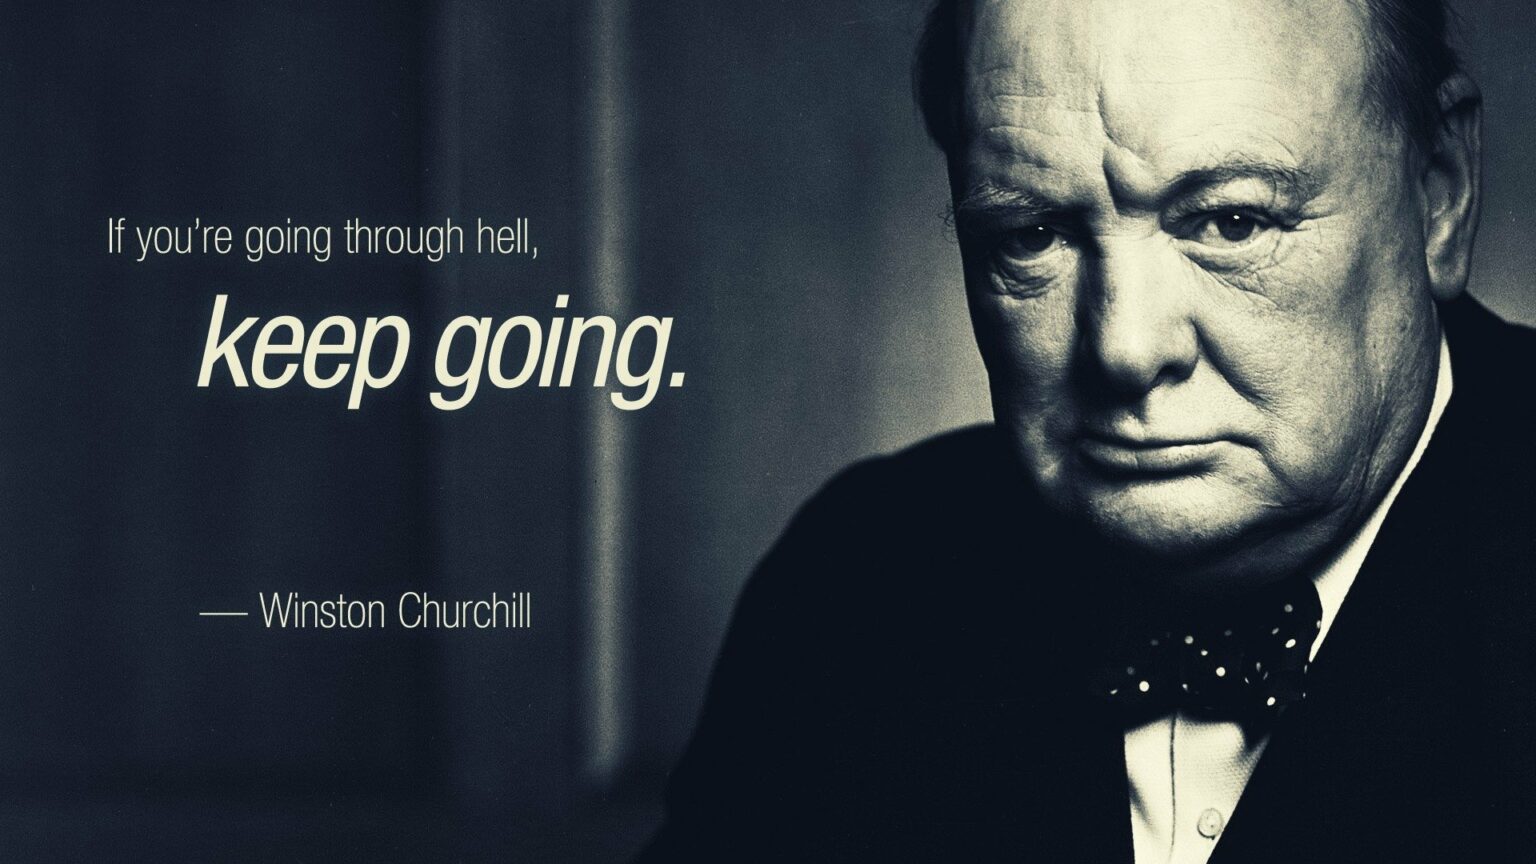 Las lecciones de liderazgo que podemos aprender de Churchill